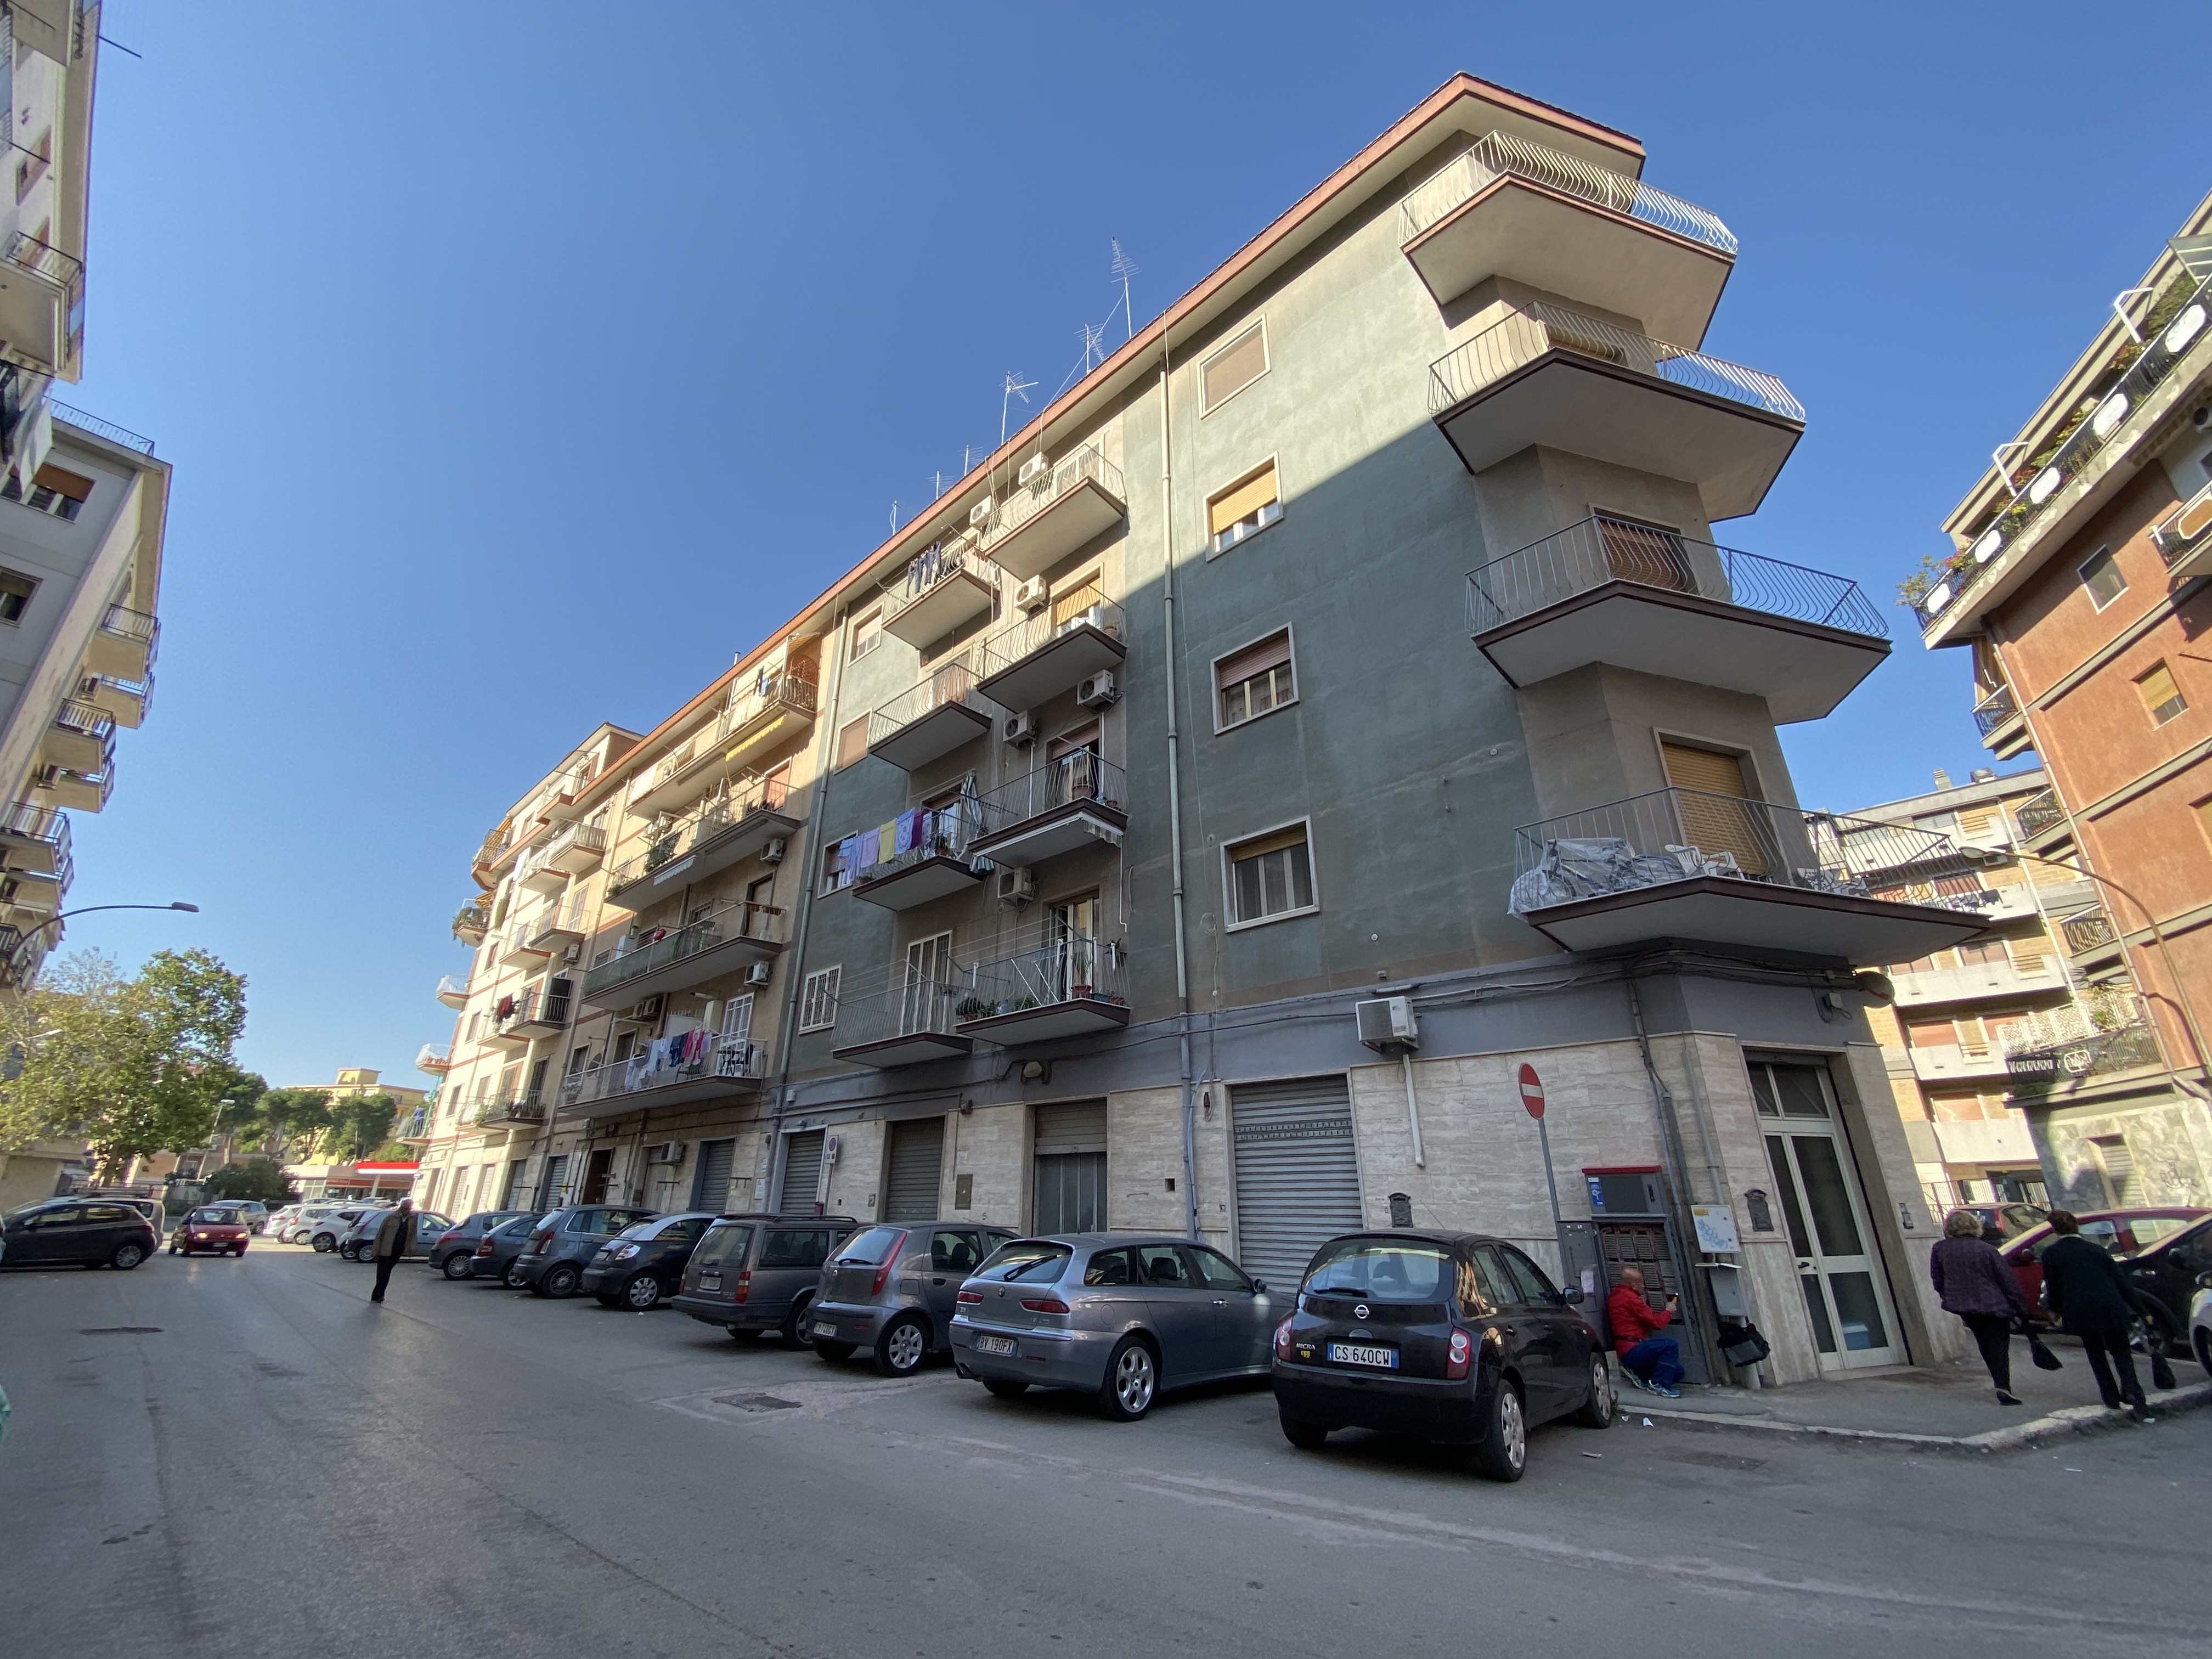 Viale Ofanto | Case ed Immobili Foggia e provincia